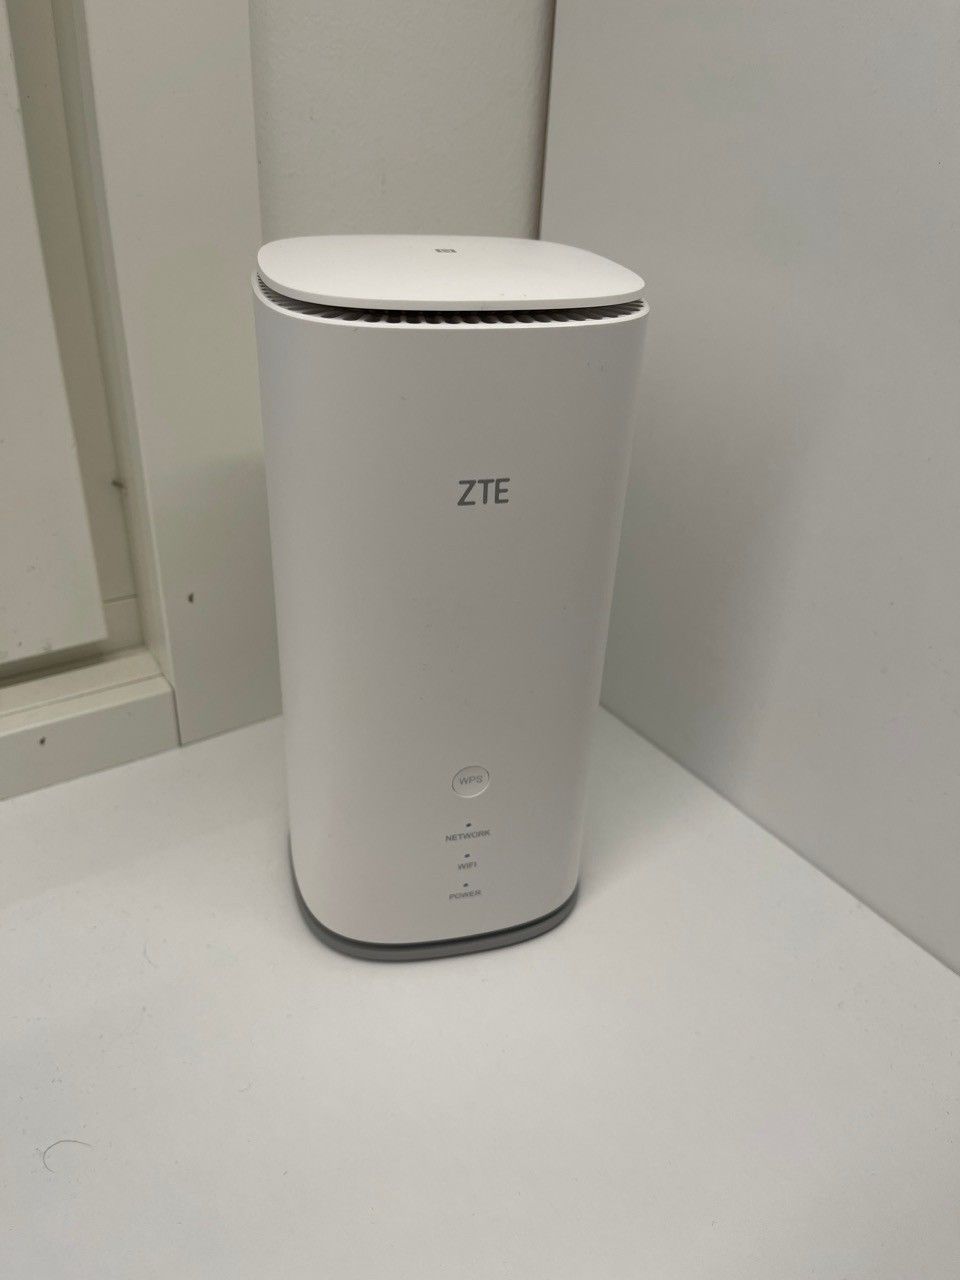 5G ZTE WiFi MC8020 Modem